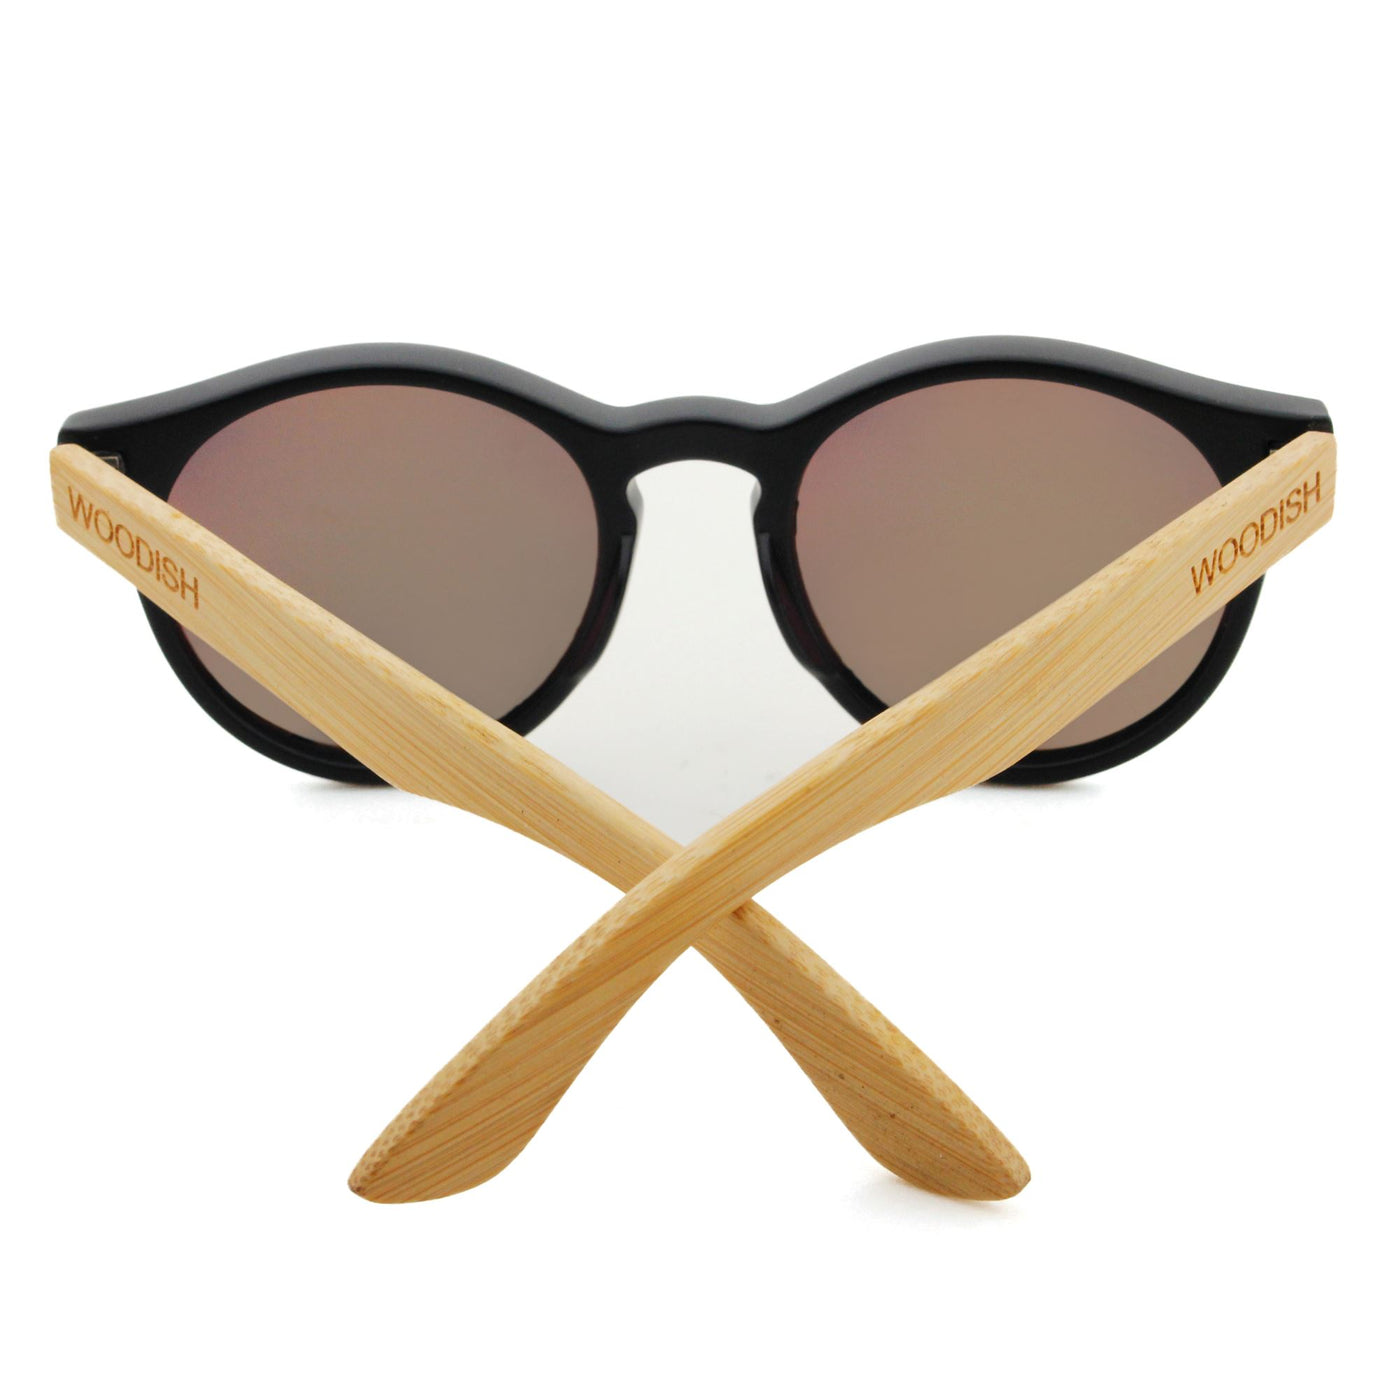 Bamboo With Yellow Polarized Lens Sunglasses S913 Unisex Sunglasses Retsing Eyewear 